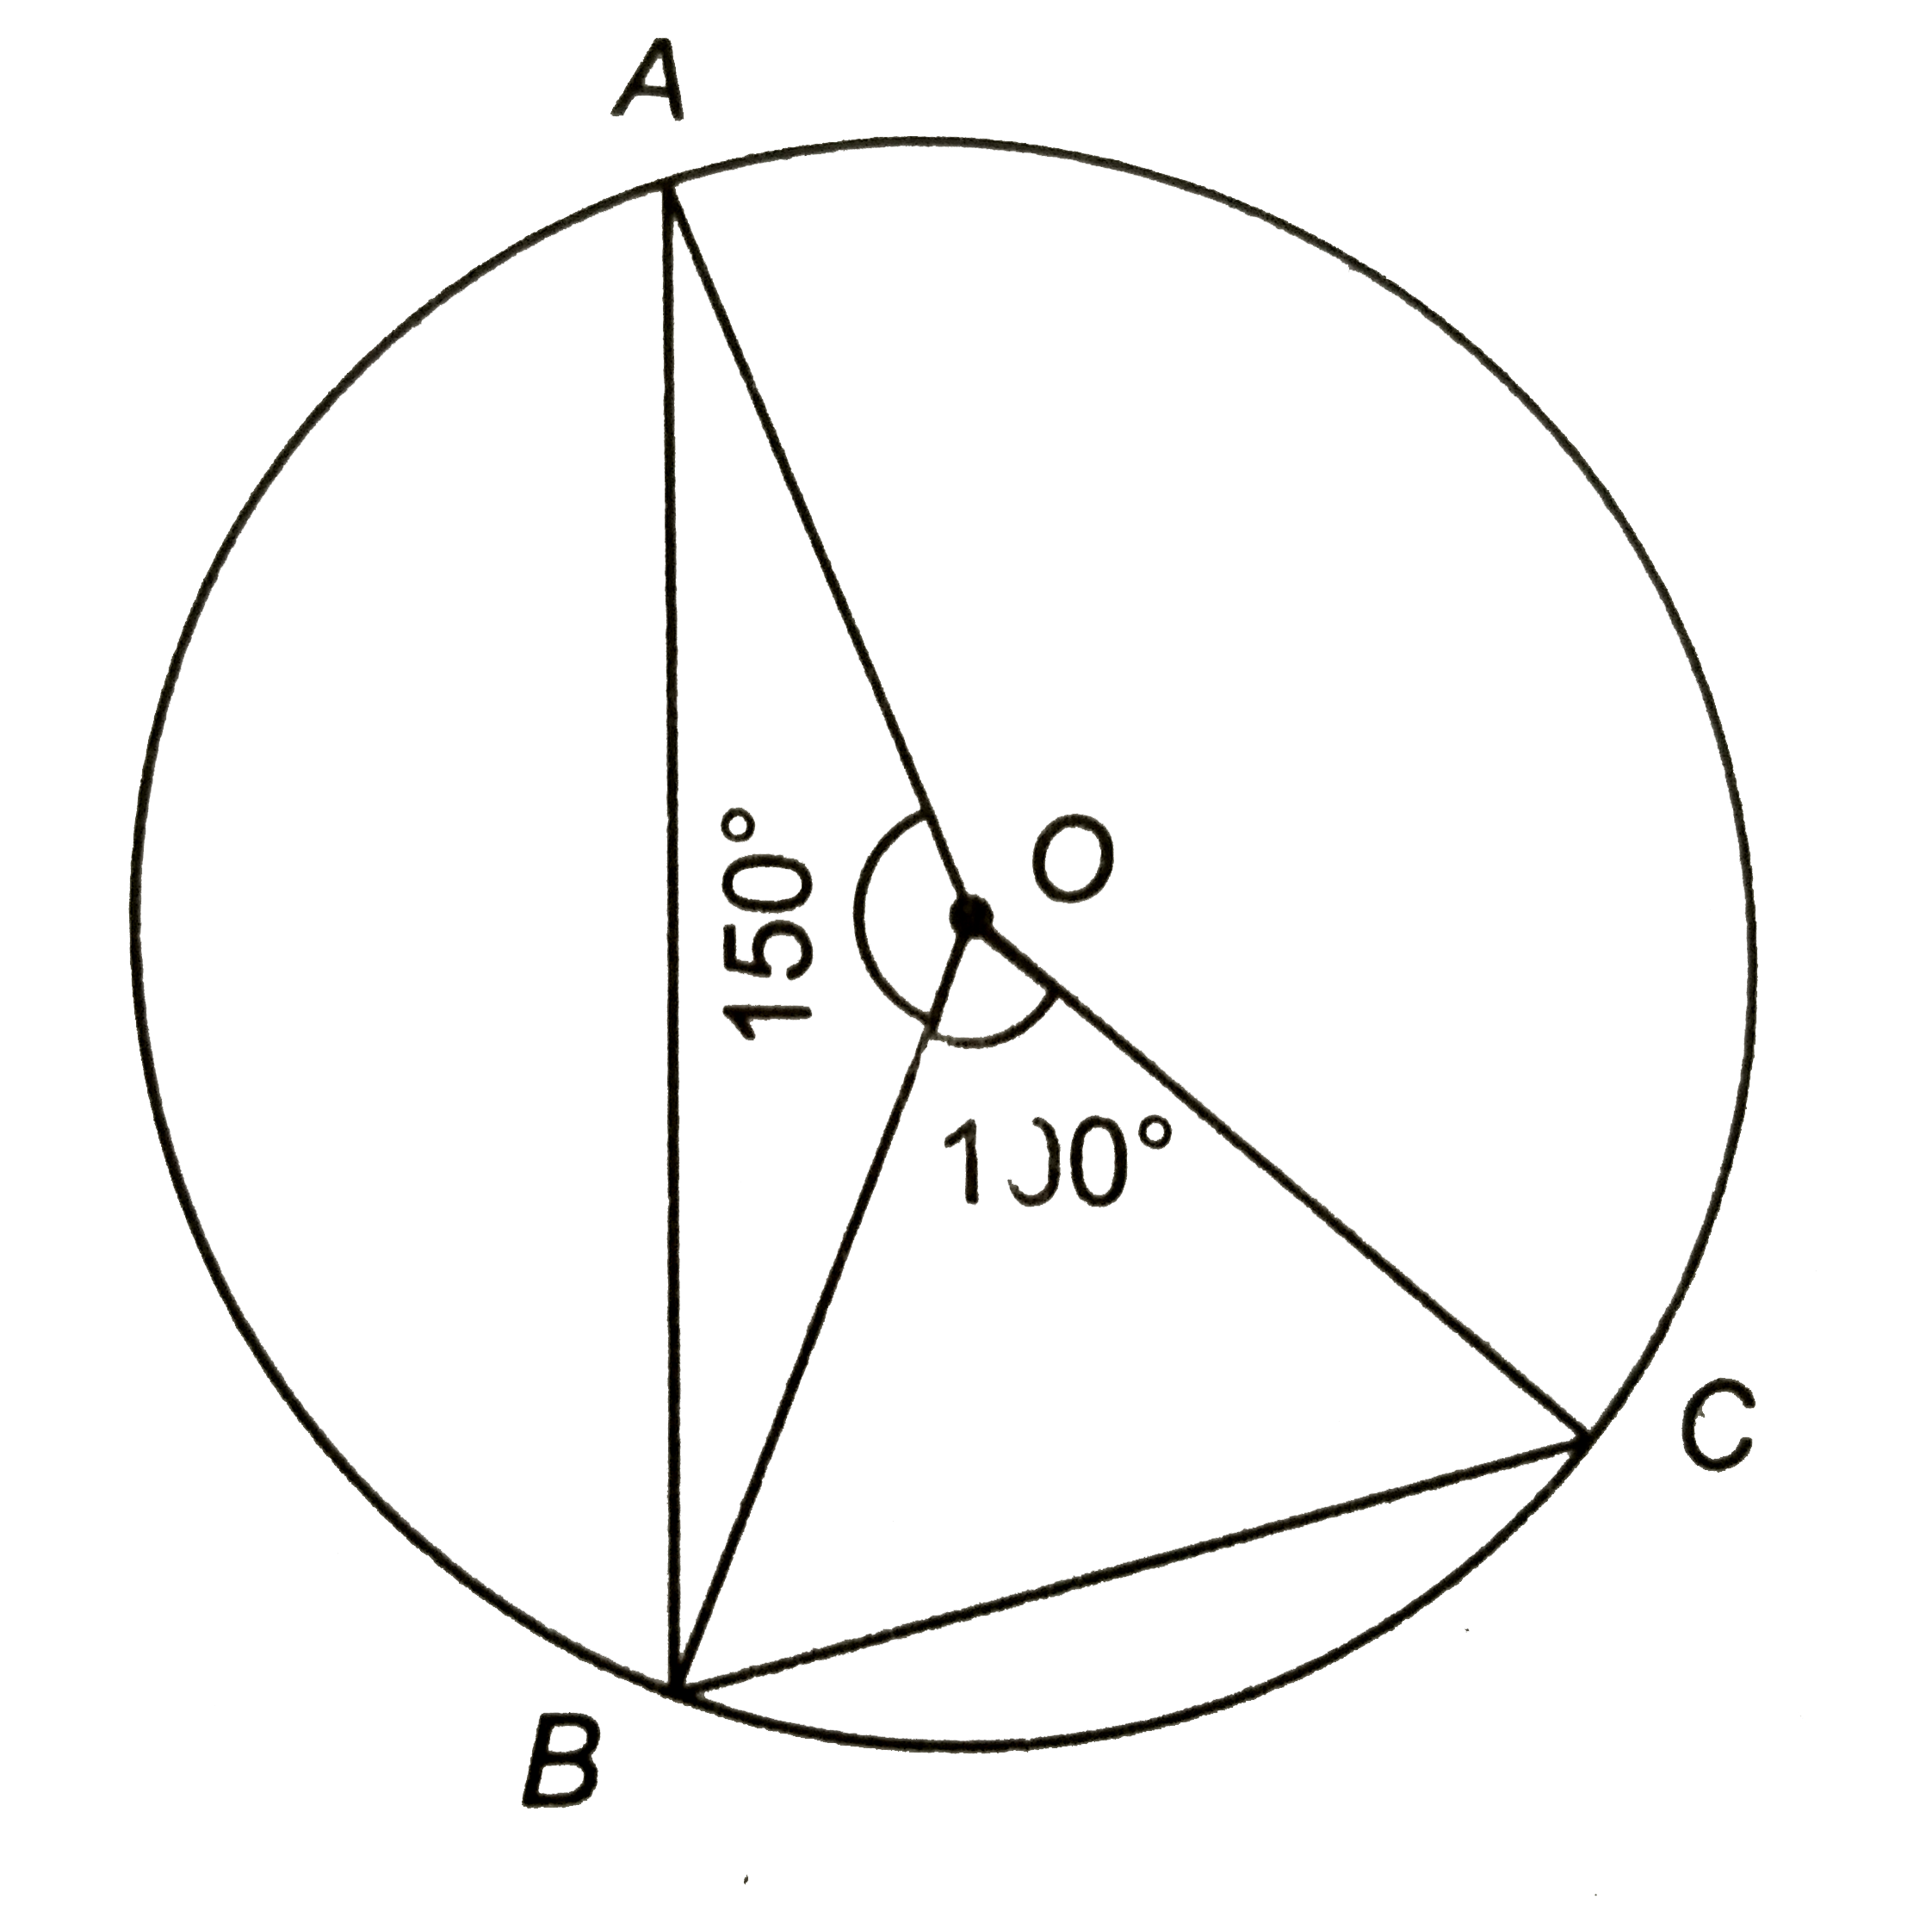 संलग्न चित्र में, 'O' वृत्त का केन्द्र है | यदि angleAOB=150^(@) तथा angleBOC=100^(@), तो angleABC का मान ज्ञात कीजिए |